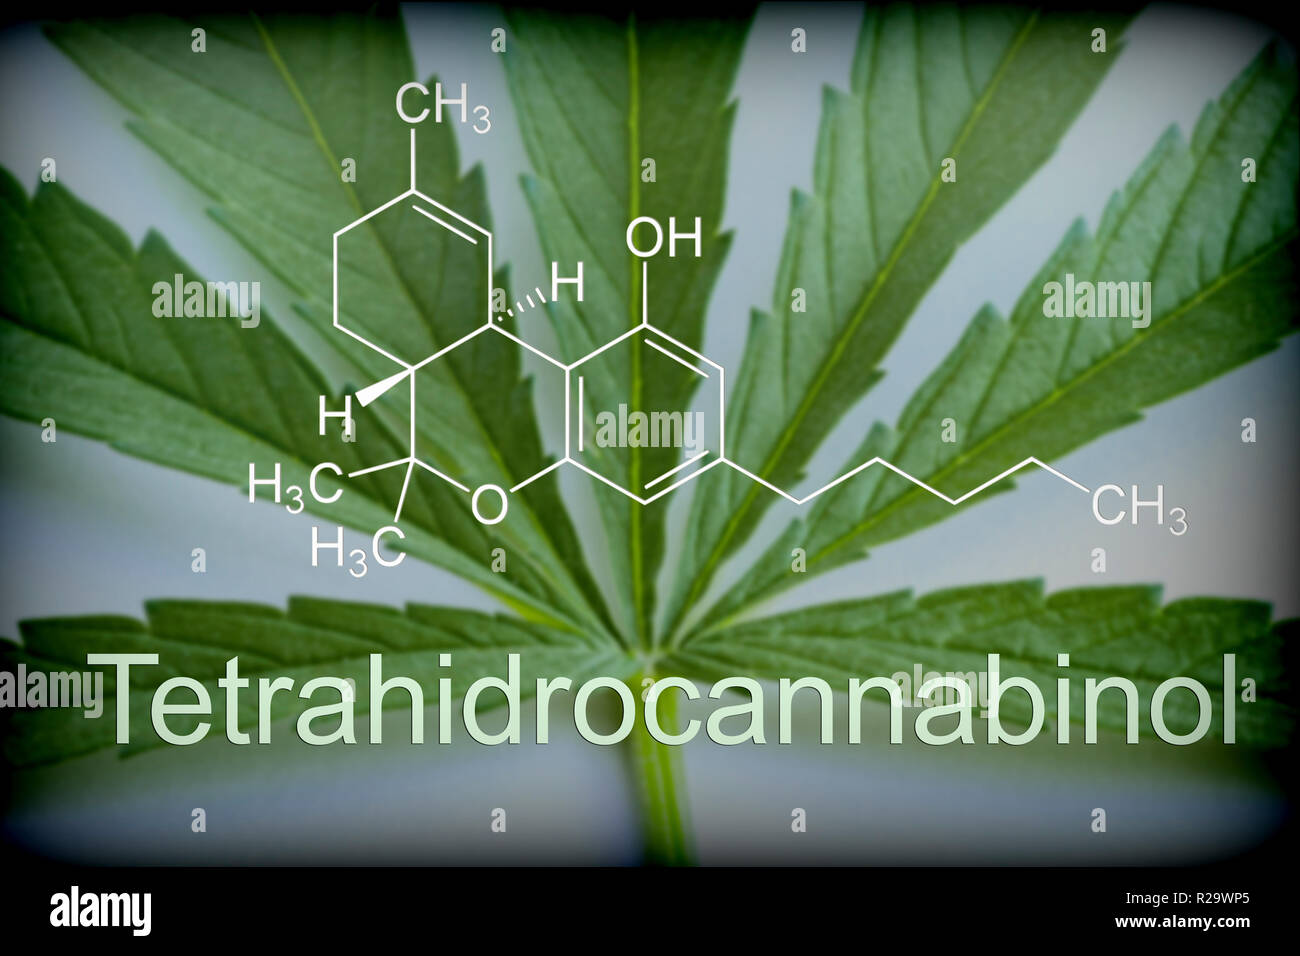 Composition chimique des feuilles de marijuana de tétrahydrocannabinol, conceptual image Banque D'Images